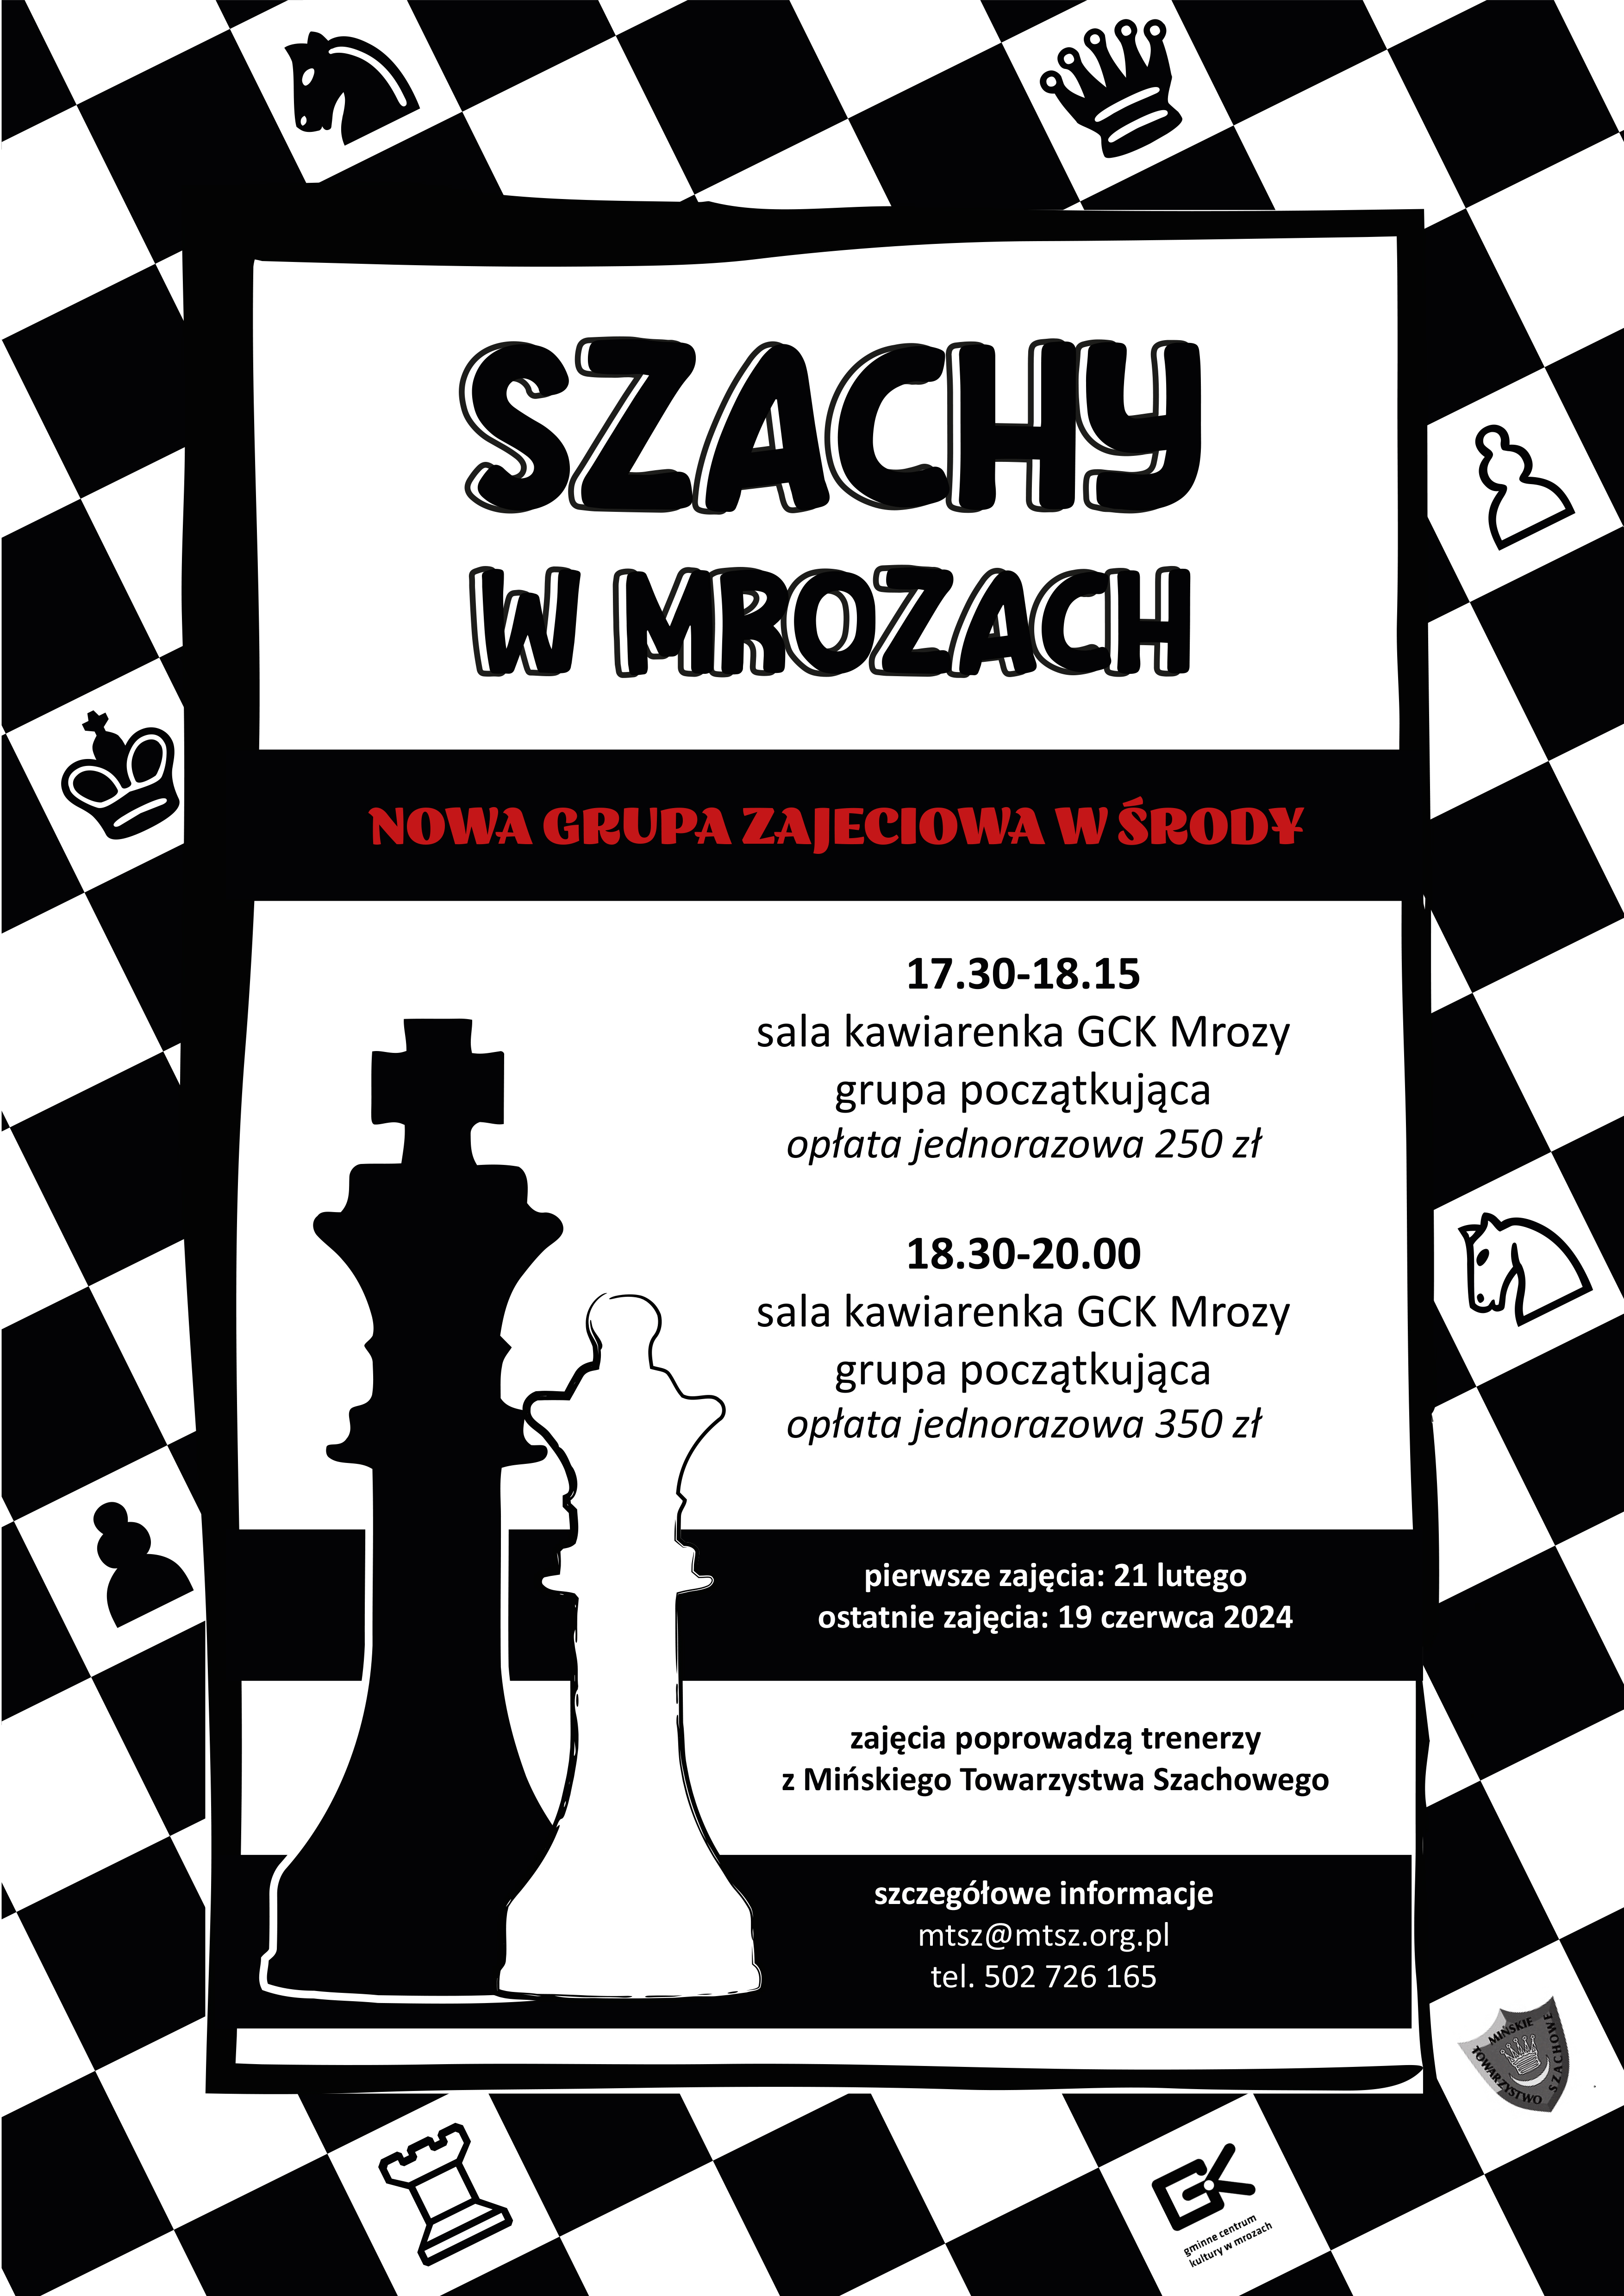 SZACHY_W_MROZACH_(1)